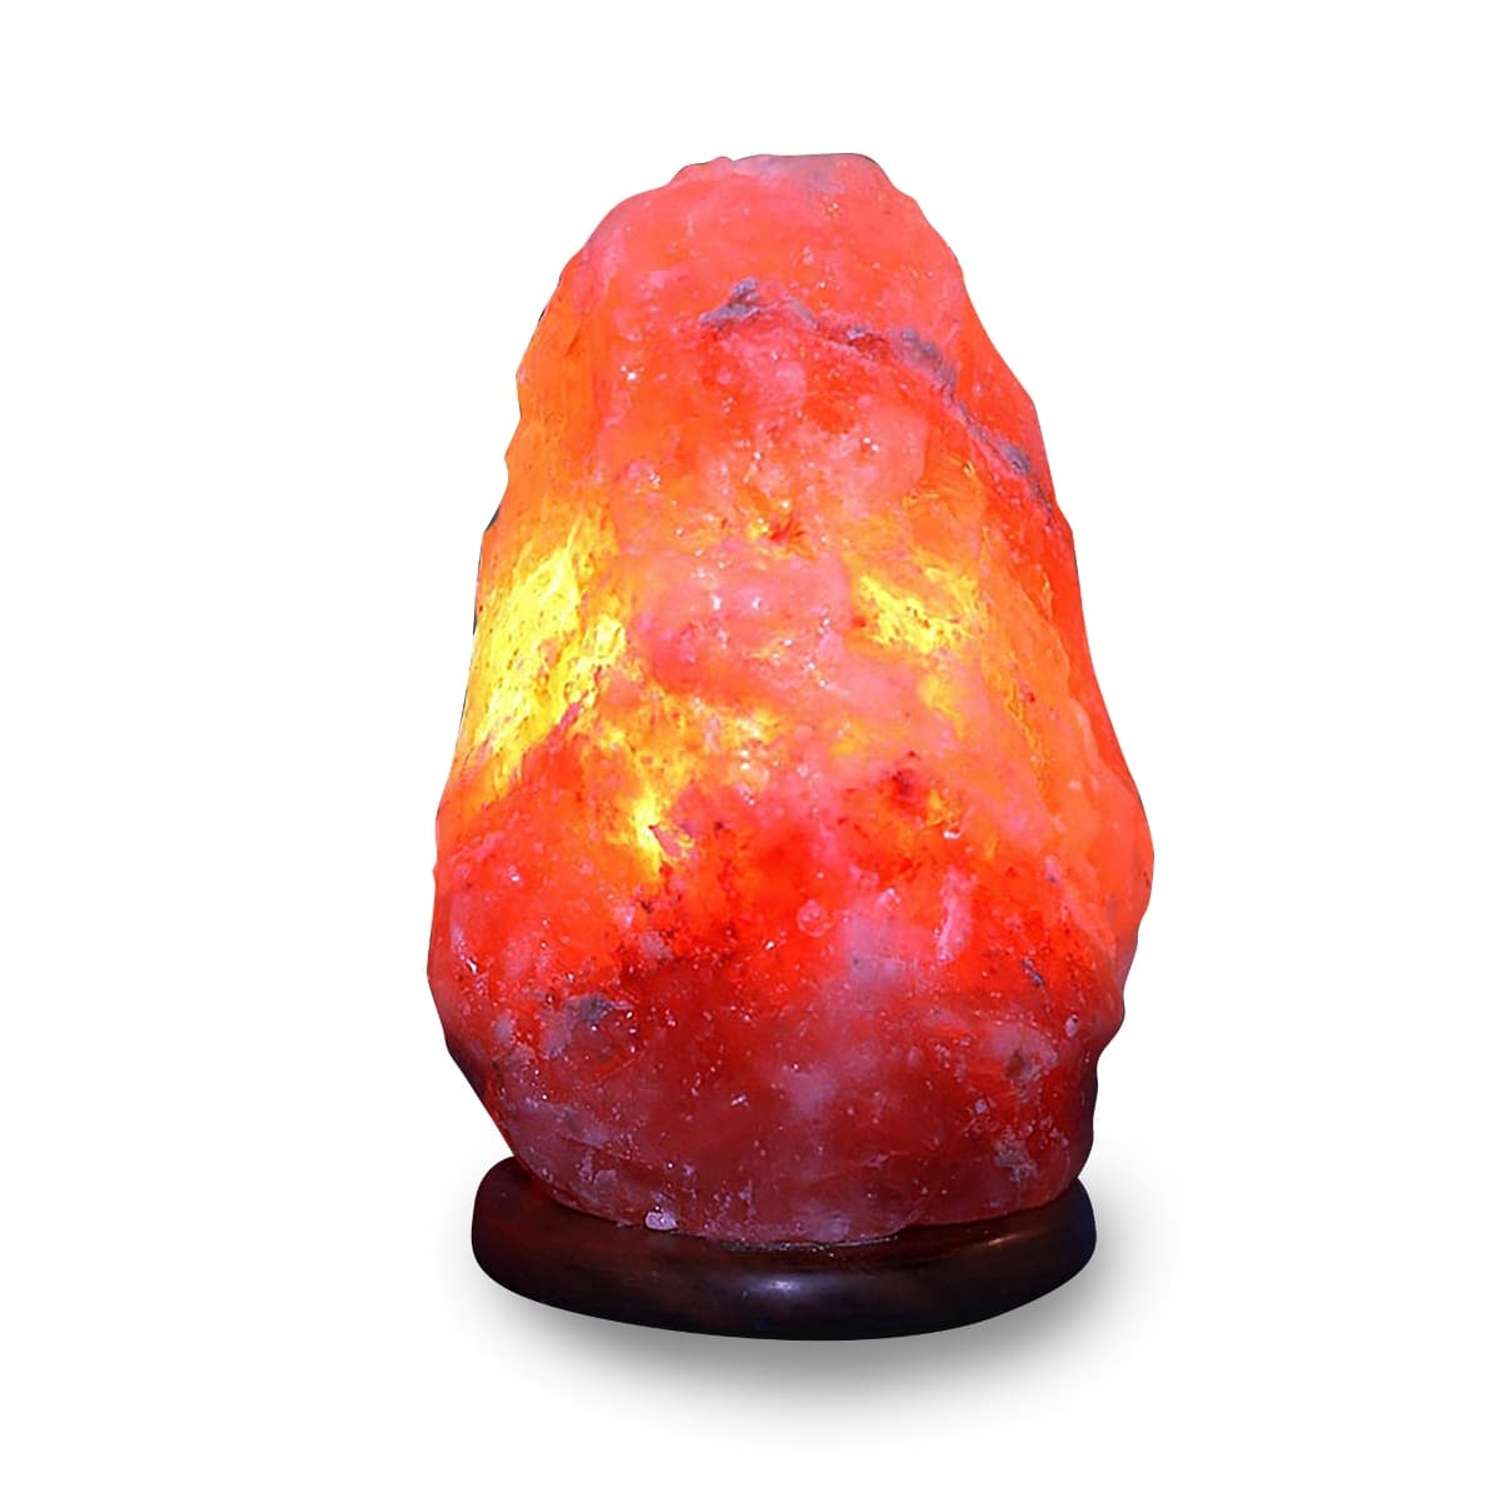 Солевая лампа Wonder Life скала 4-6кг Гималайская соль красного оттенка - фото 1